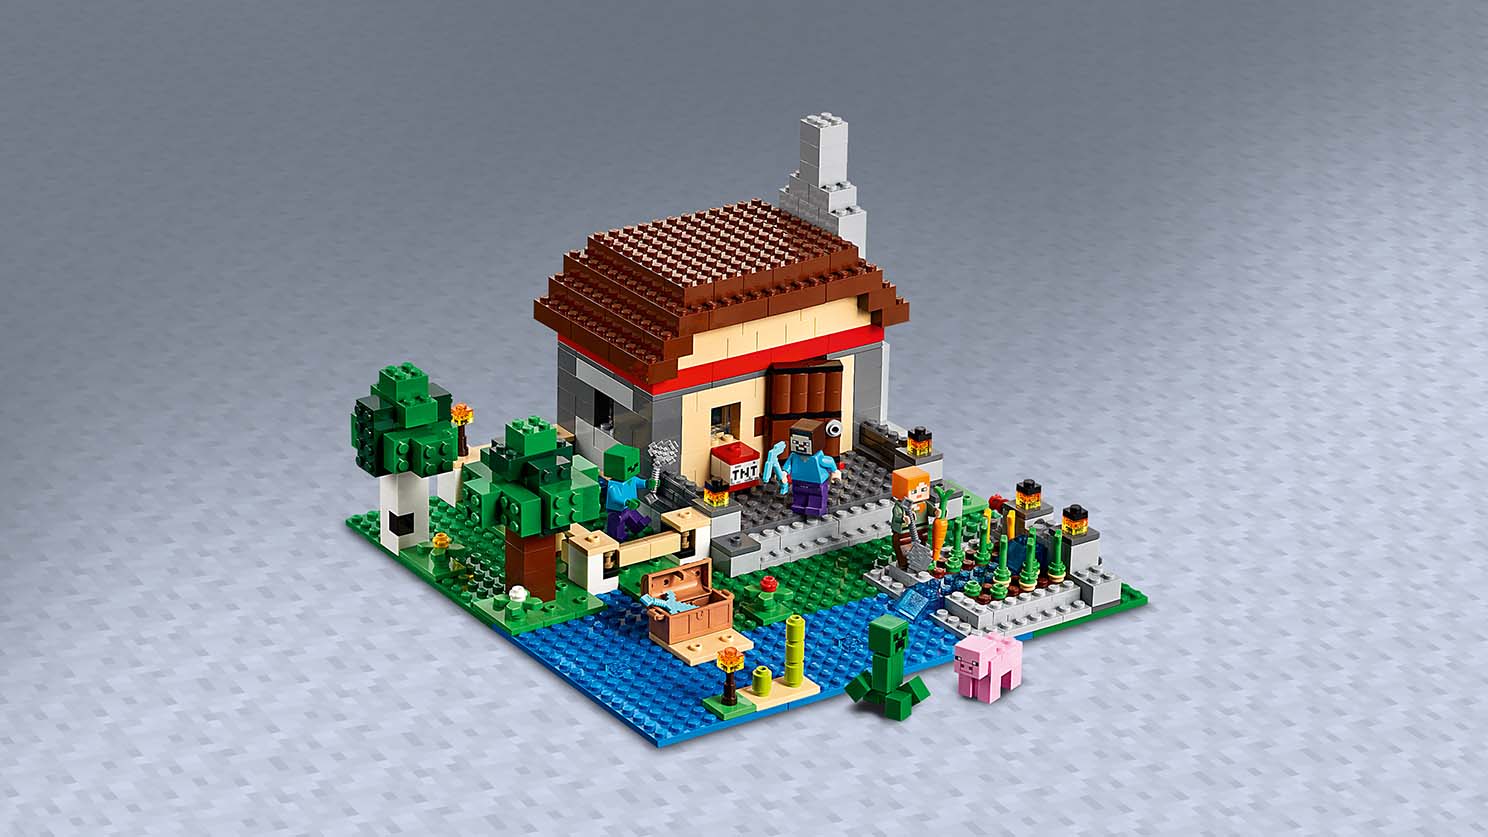 クラフトボックス 3.0 21161 - レゴ®マインクラフト セット - LEGO.com